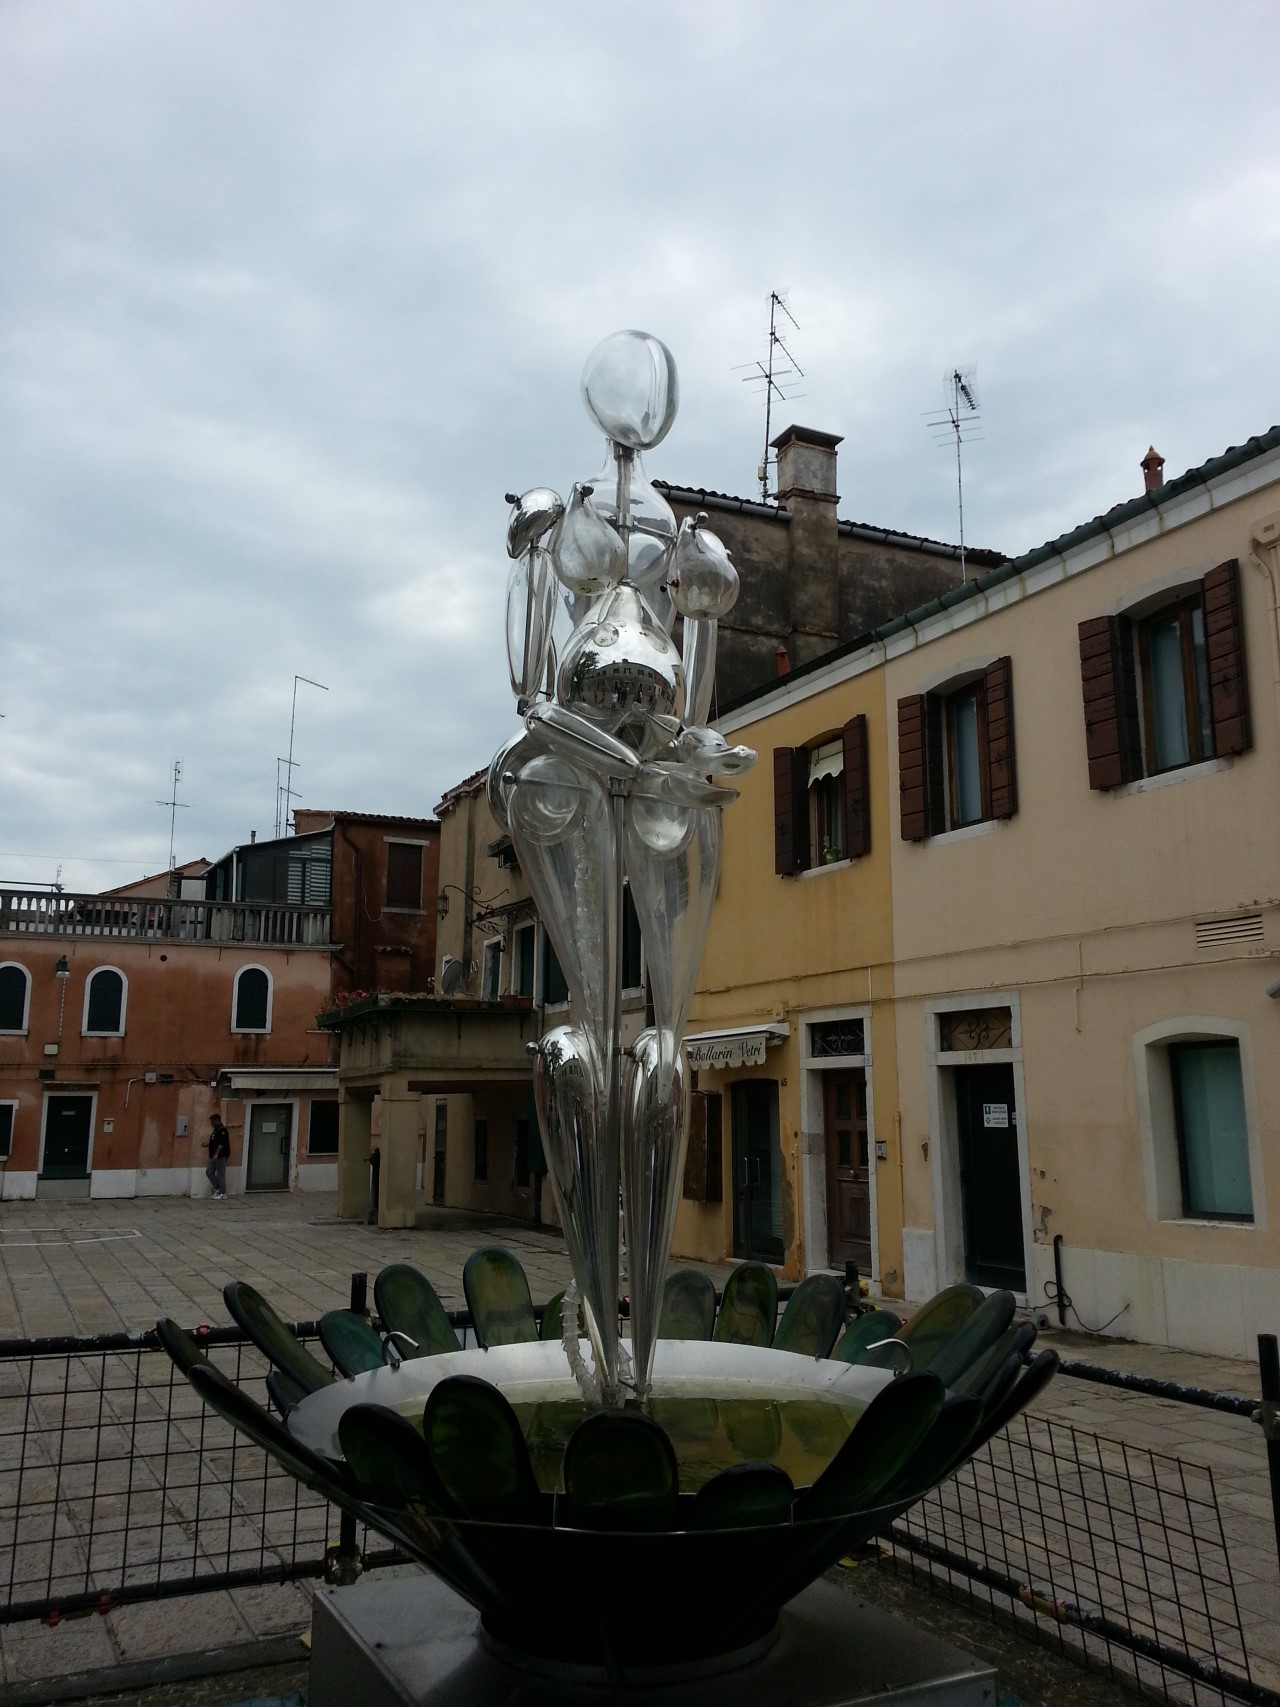 <p>Съвсем близо до Венеция се намира едно малко островно бижу, на което се произвежда известното венецианско стъкло. Този остров се нарича Мурано и освен че е красив и много приятен за разходки, той крие и някои тайни свързани именно с това прочуто венецианско стъкло.</p>

<p><a href="https://www.vesti.bg/lyubopitno/tajnite-na-ostrov-murano-i-venecianskoto-styklo-6147689" target="_blank"><u><strong>Тайните на Мурано и венецианското стъкло вижте тук</strong></u></a></p>